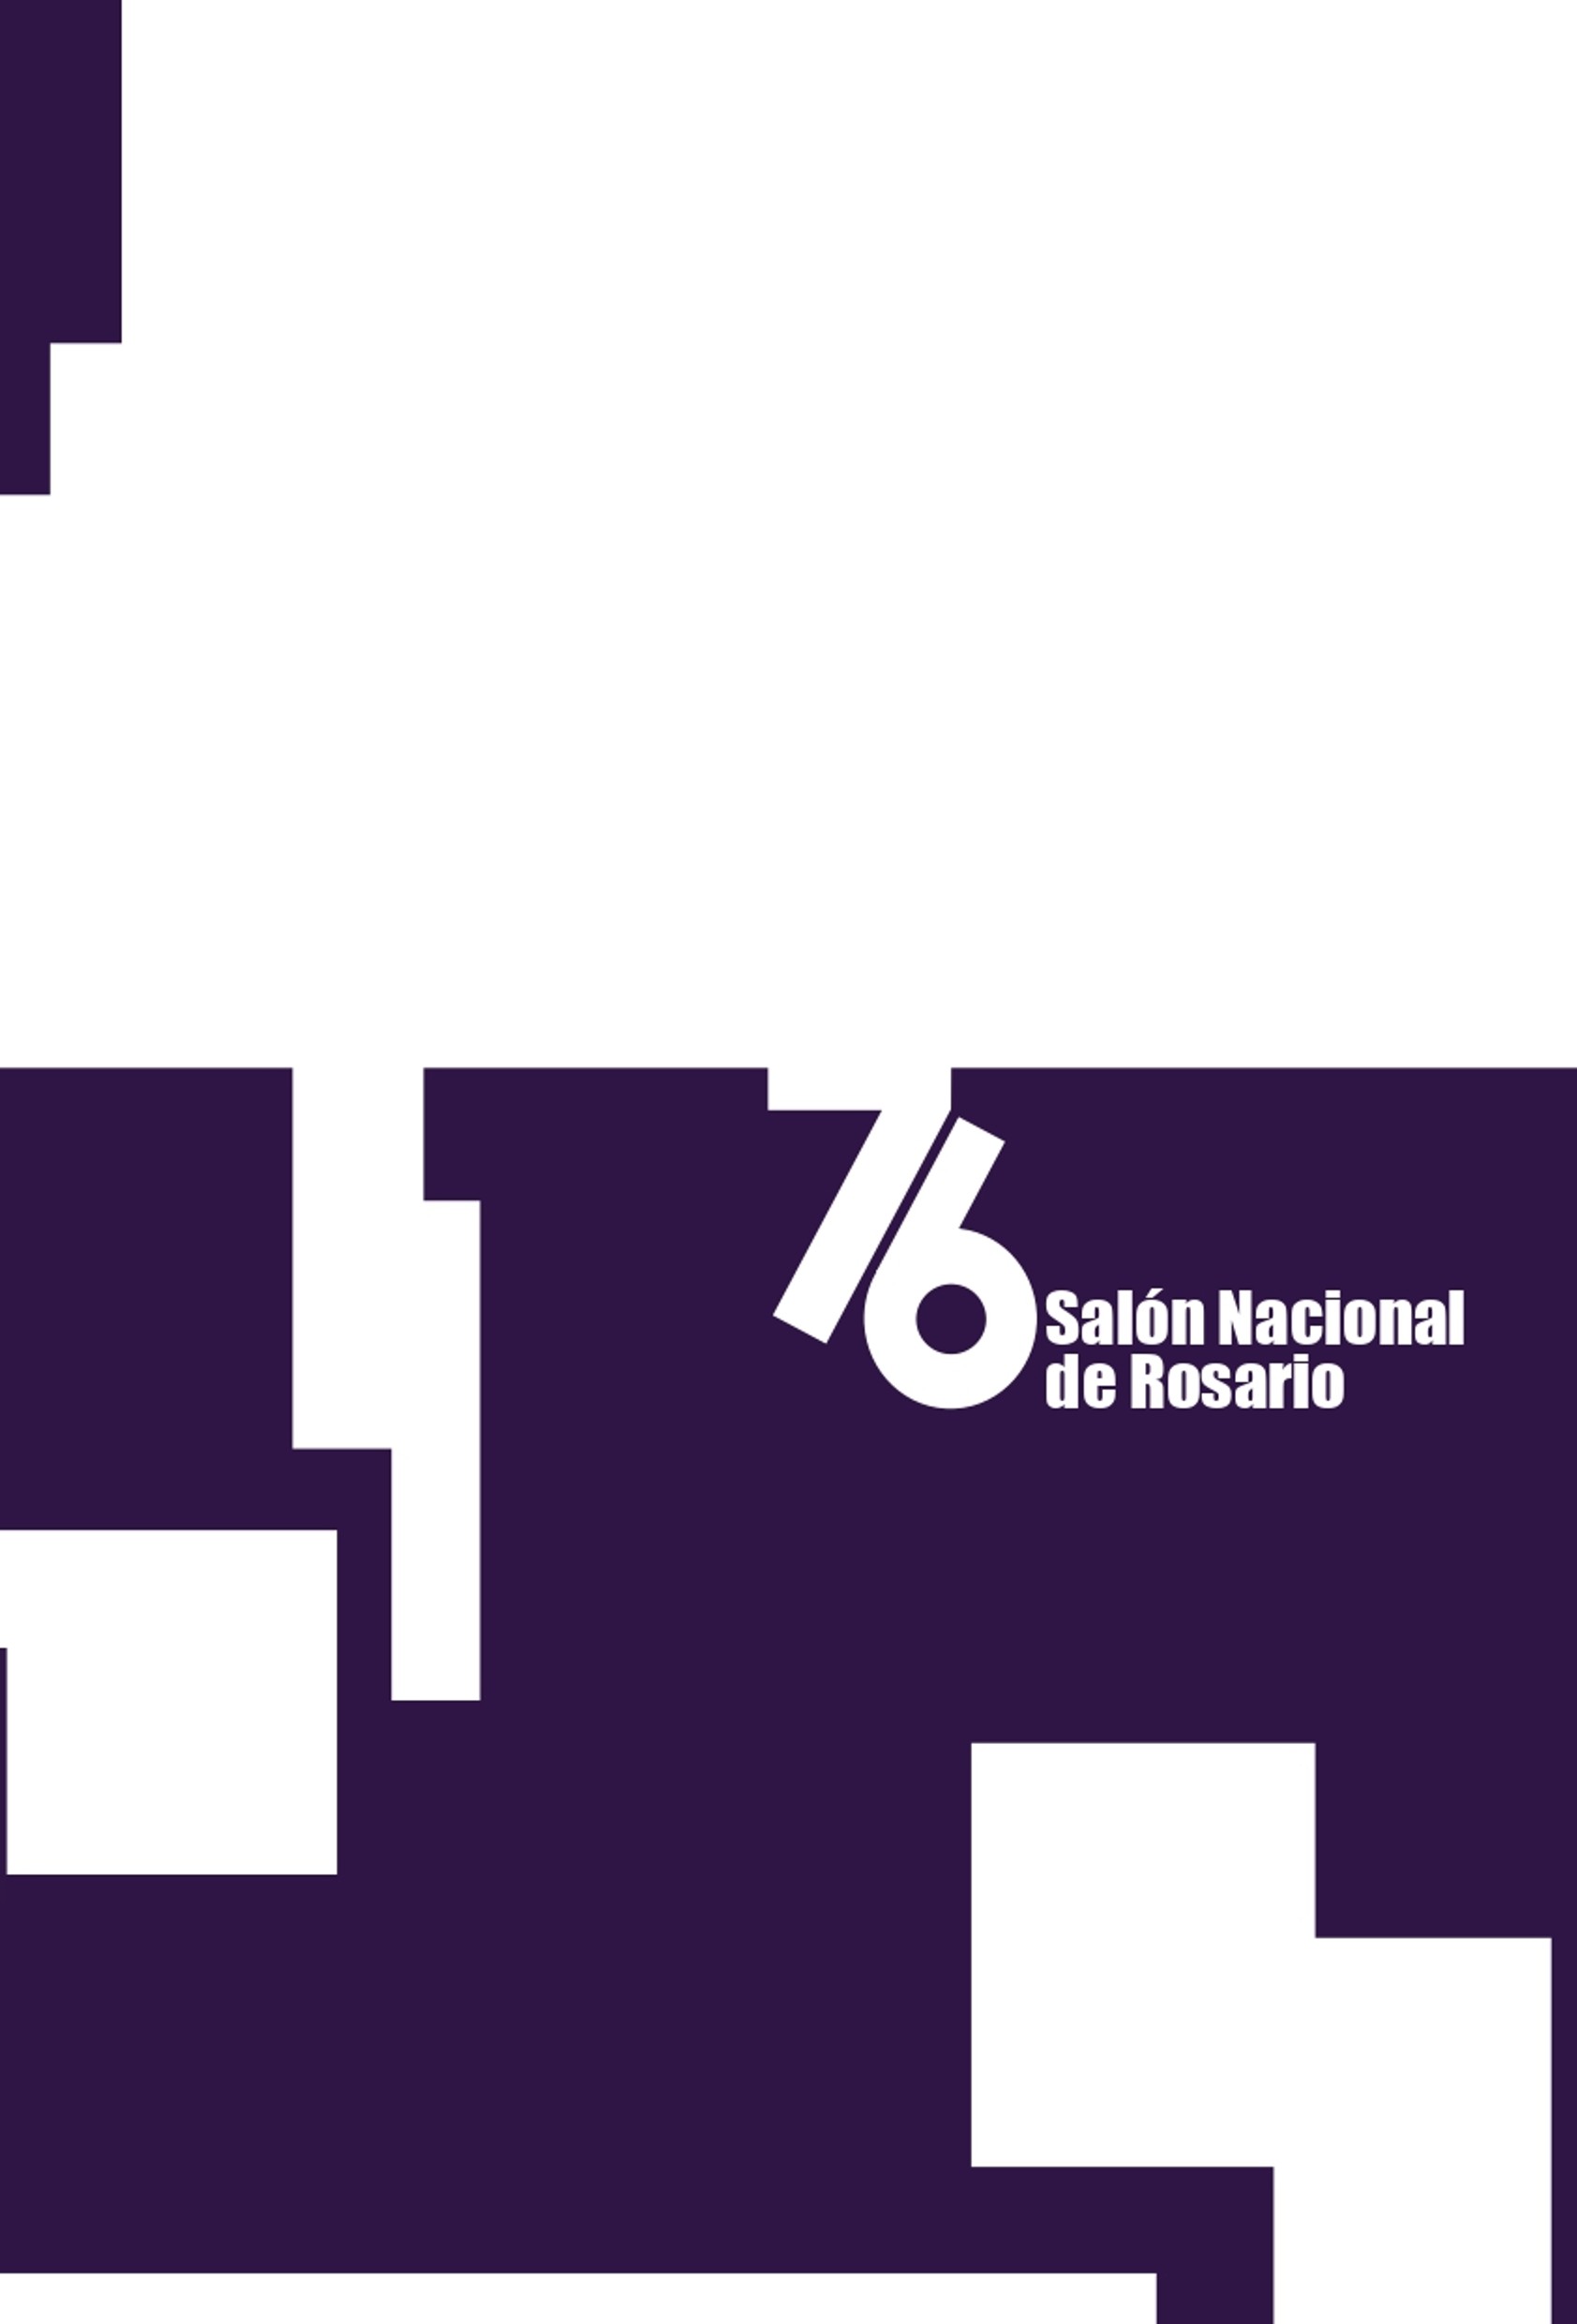 76° Salón Nacional de Rosario portada